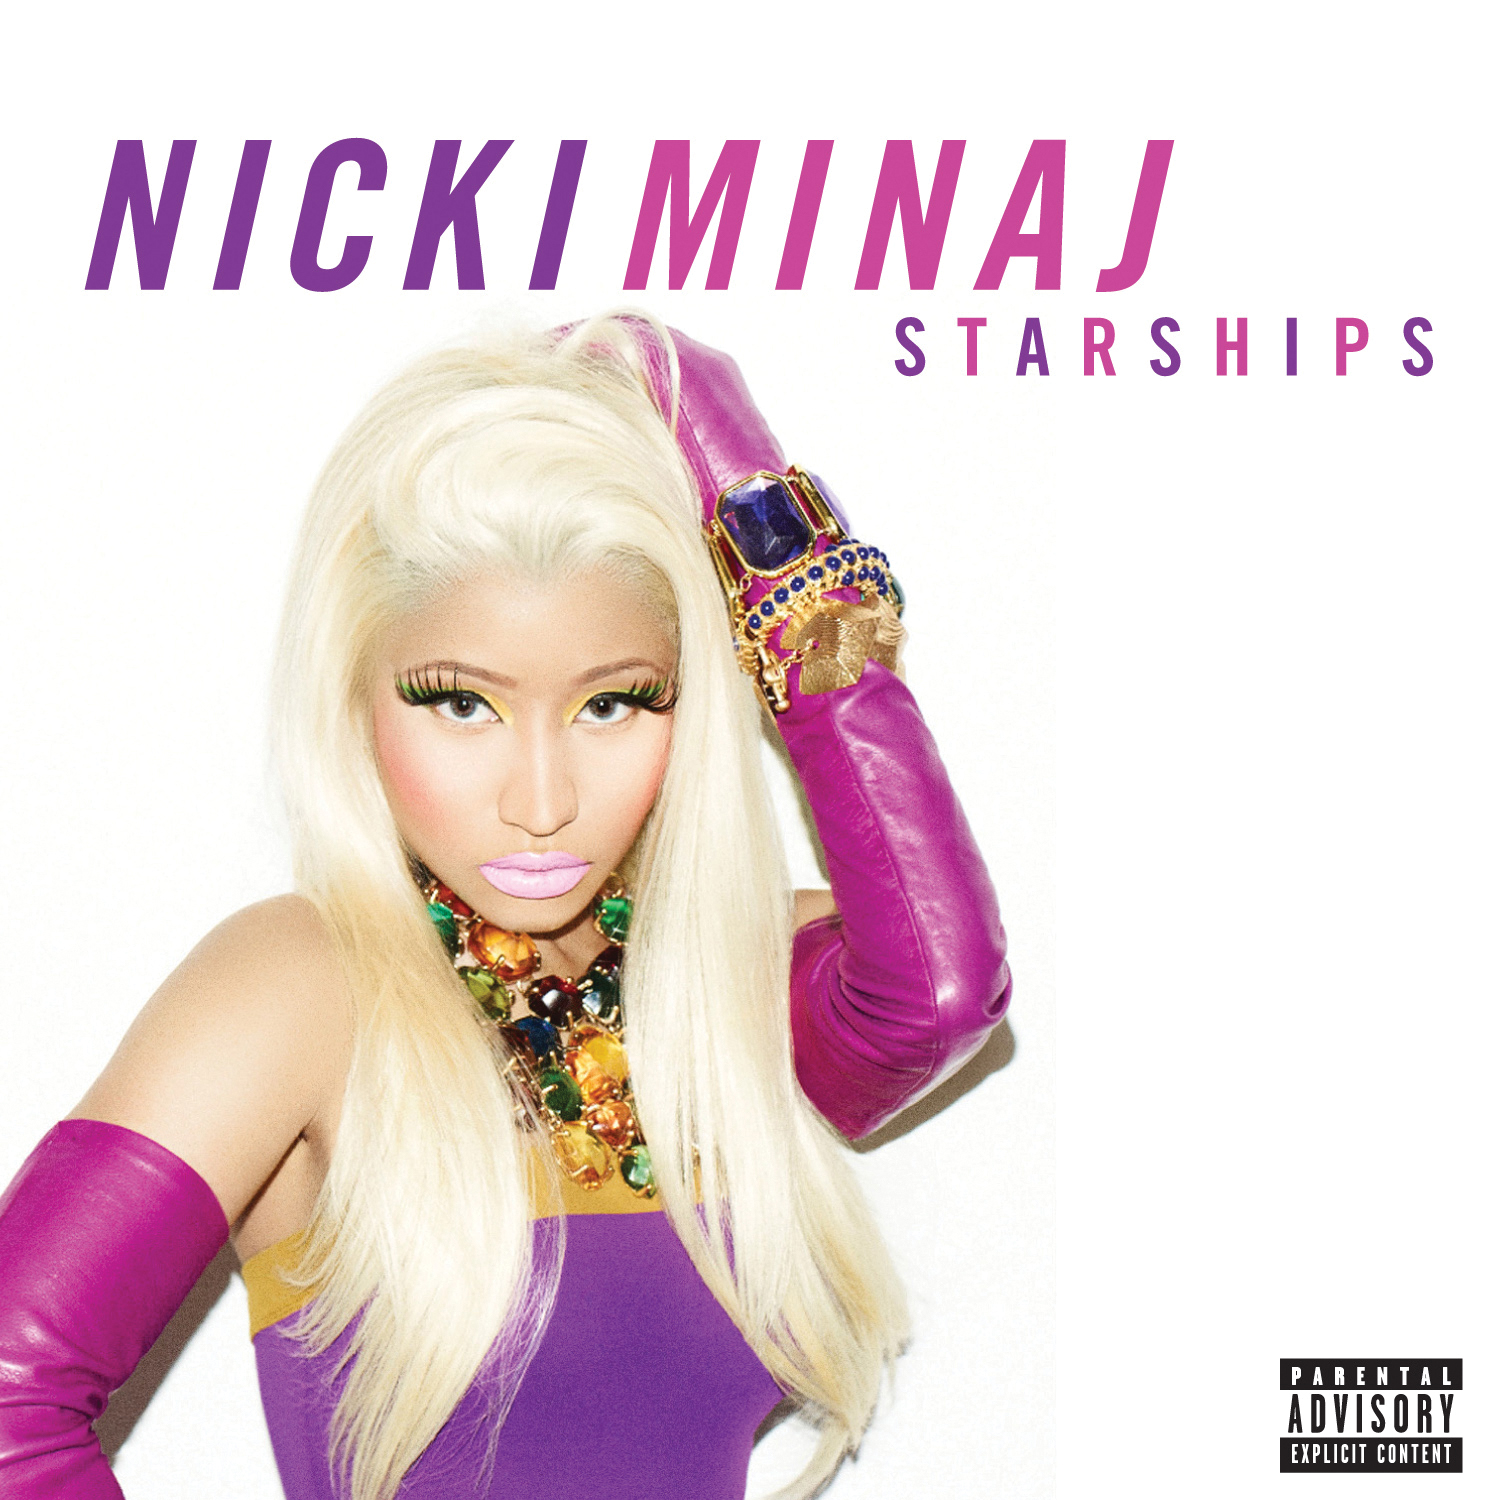 Nicki Minaj's art for her  Starships  single, released on February 14, 2012